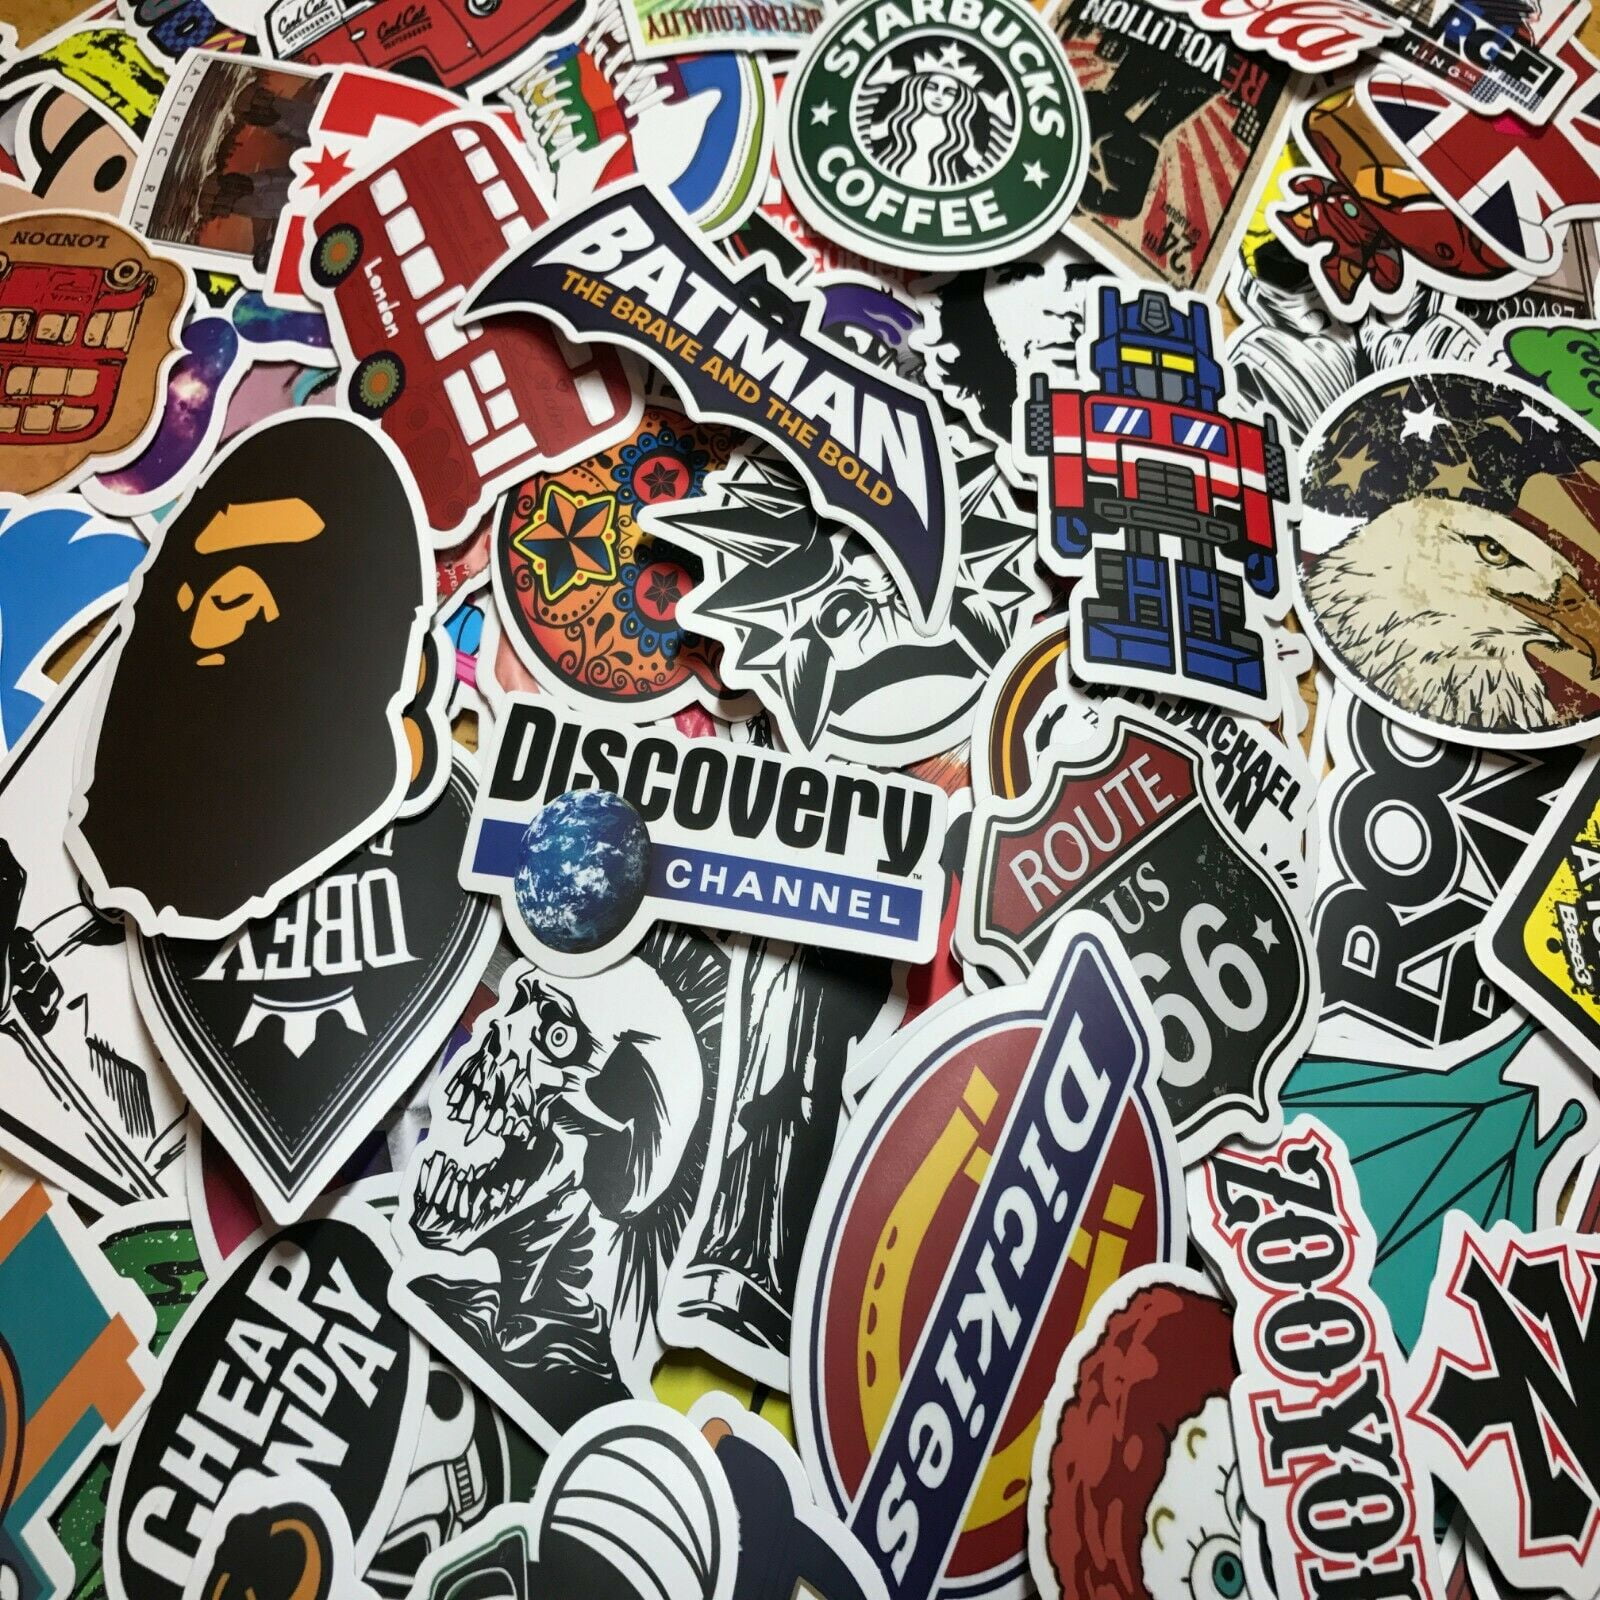 300 Random Skateboard Stickers Vinyl Laptop Luggage Decals Dope Sticker Lot Mix 